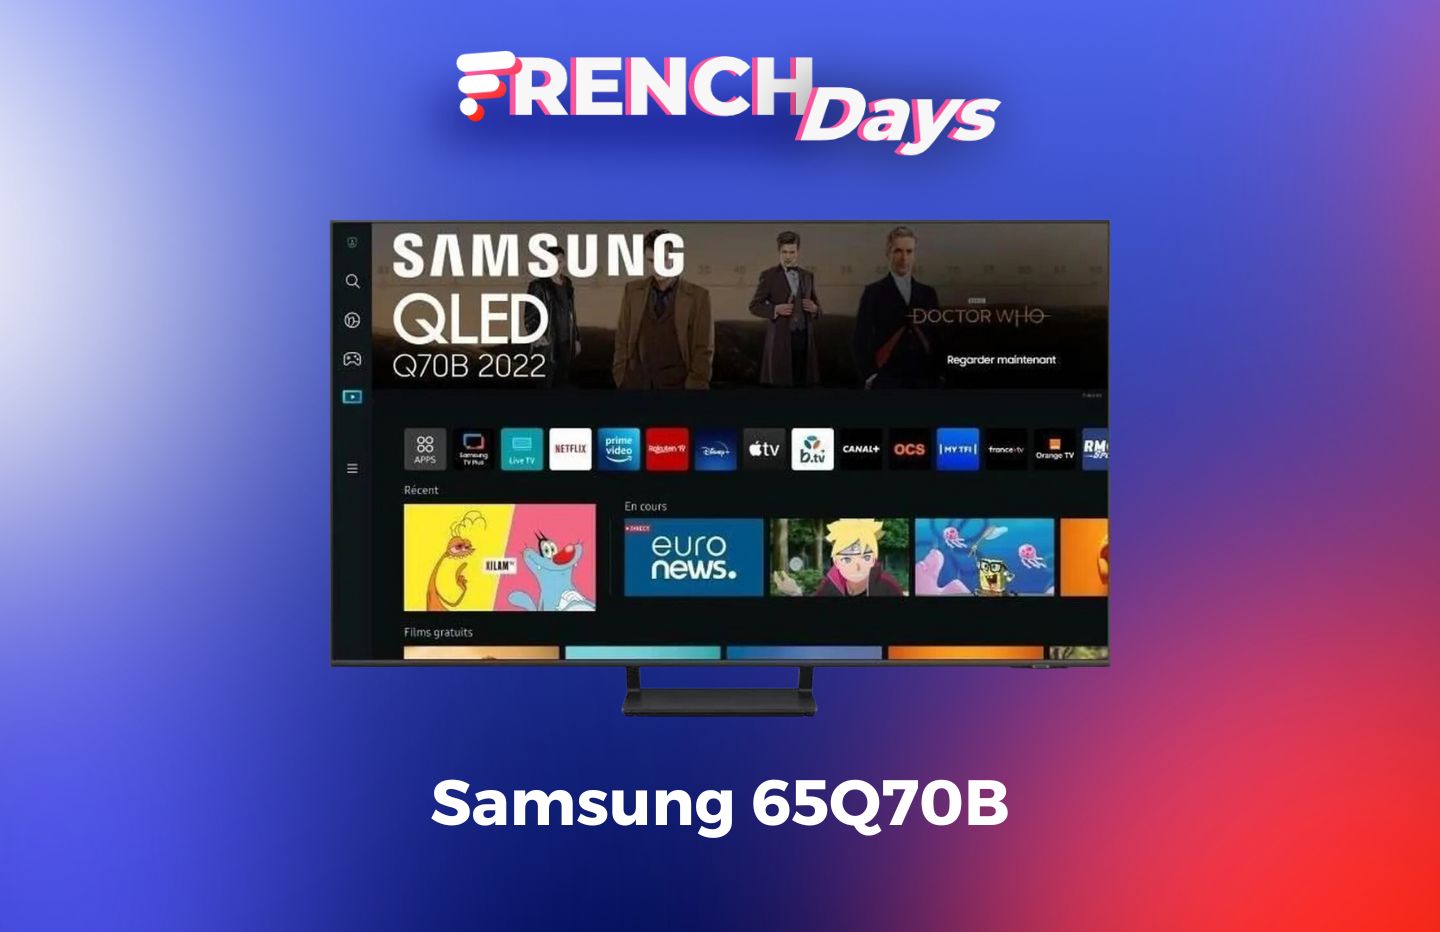 Cet énorme TV QLED 65 pouces de Samsung (4K@120Hz) est à moitié prix pour les French Days